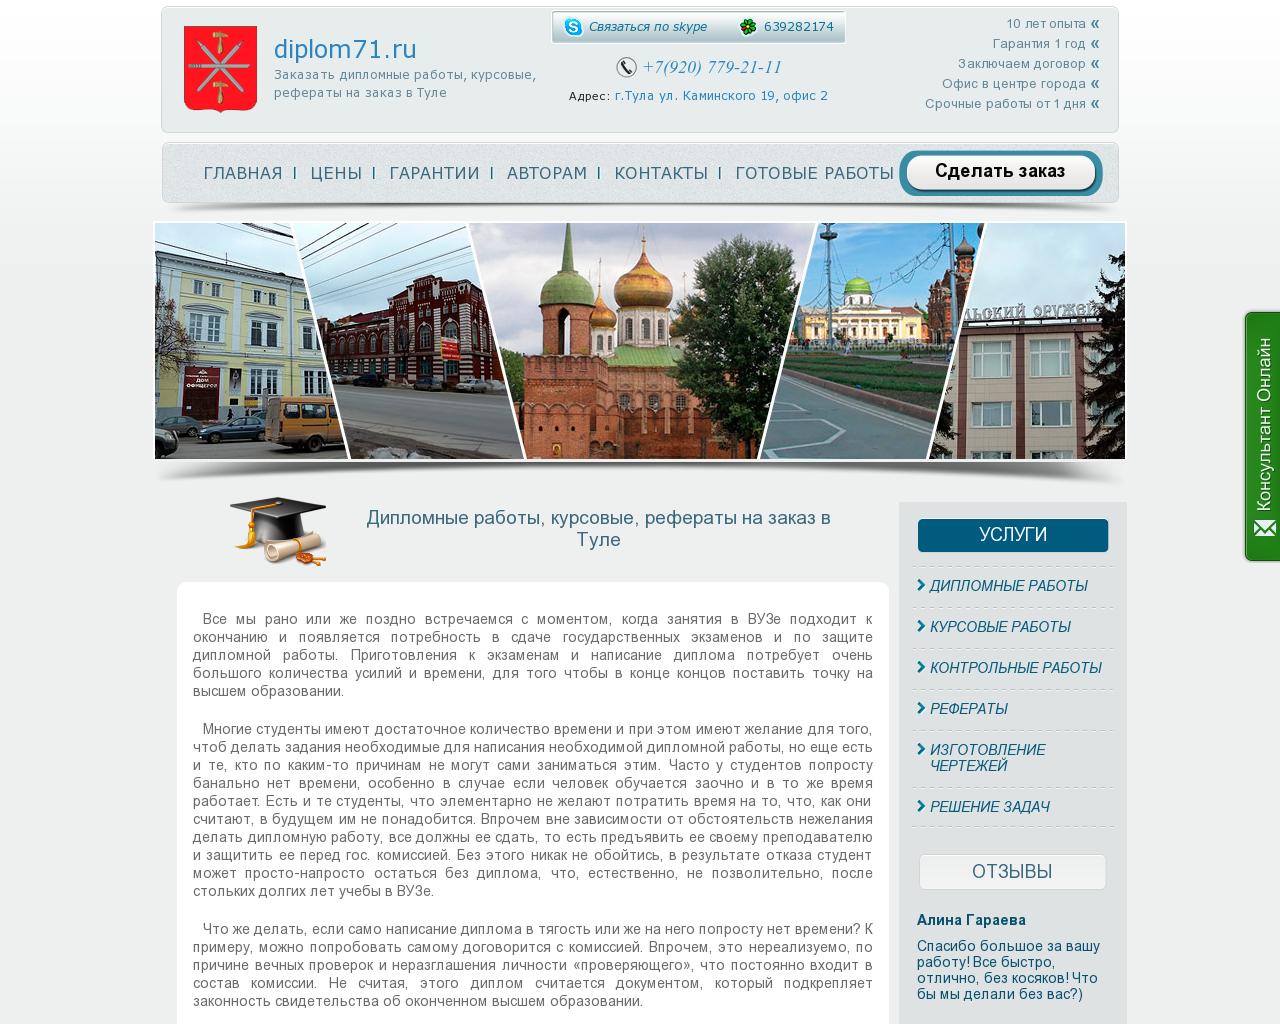 Изображение сайта diplom71.ru в разрешении 1280x1024